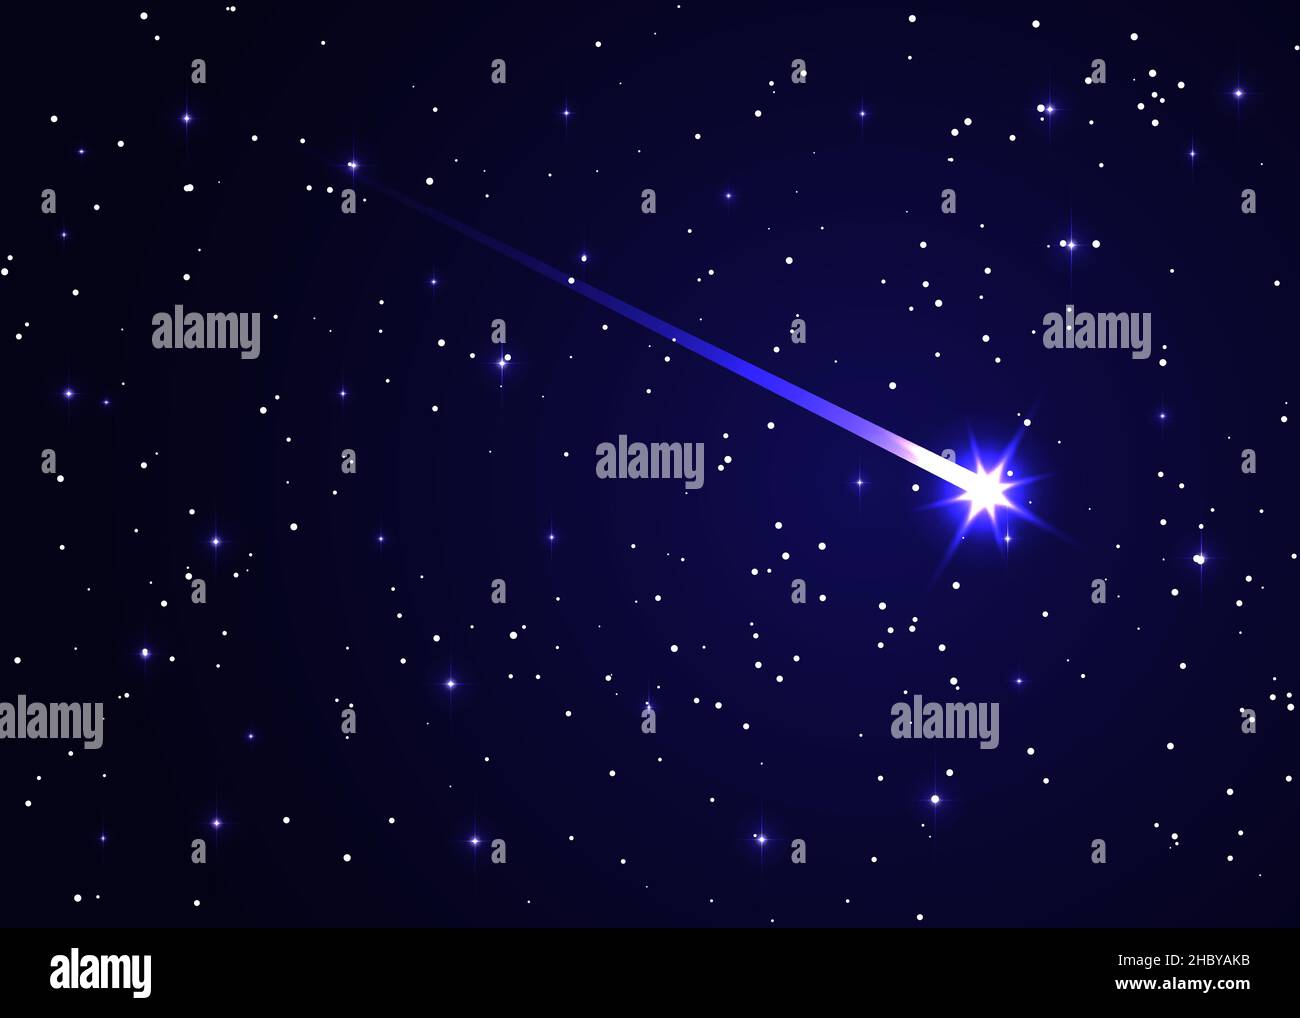 Komet im Sternenhimmel, Stern und Kometenuniversum Hintergrund. Horizontaler Hintergrund der Astrologie. Sternstaub in der Galaxie, Sternschnuppe gegen Dunkelblau Stock Vektor